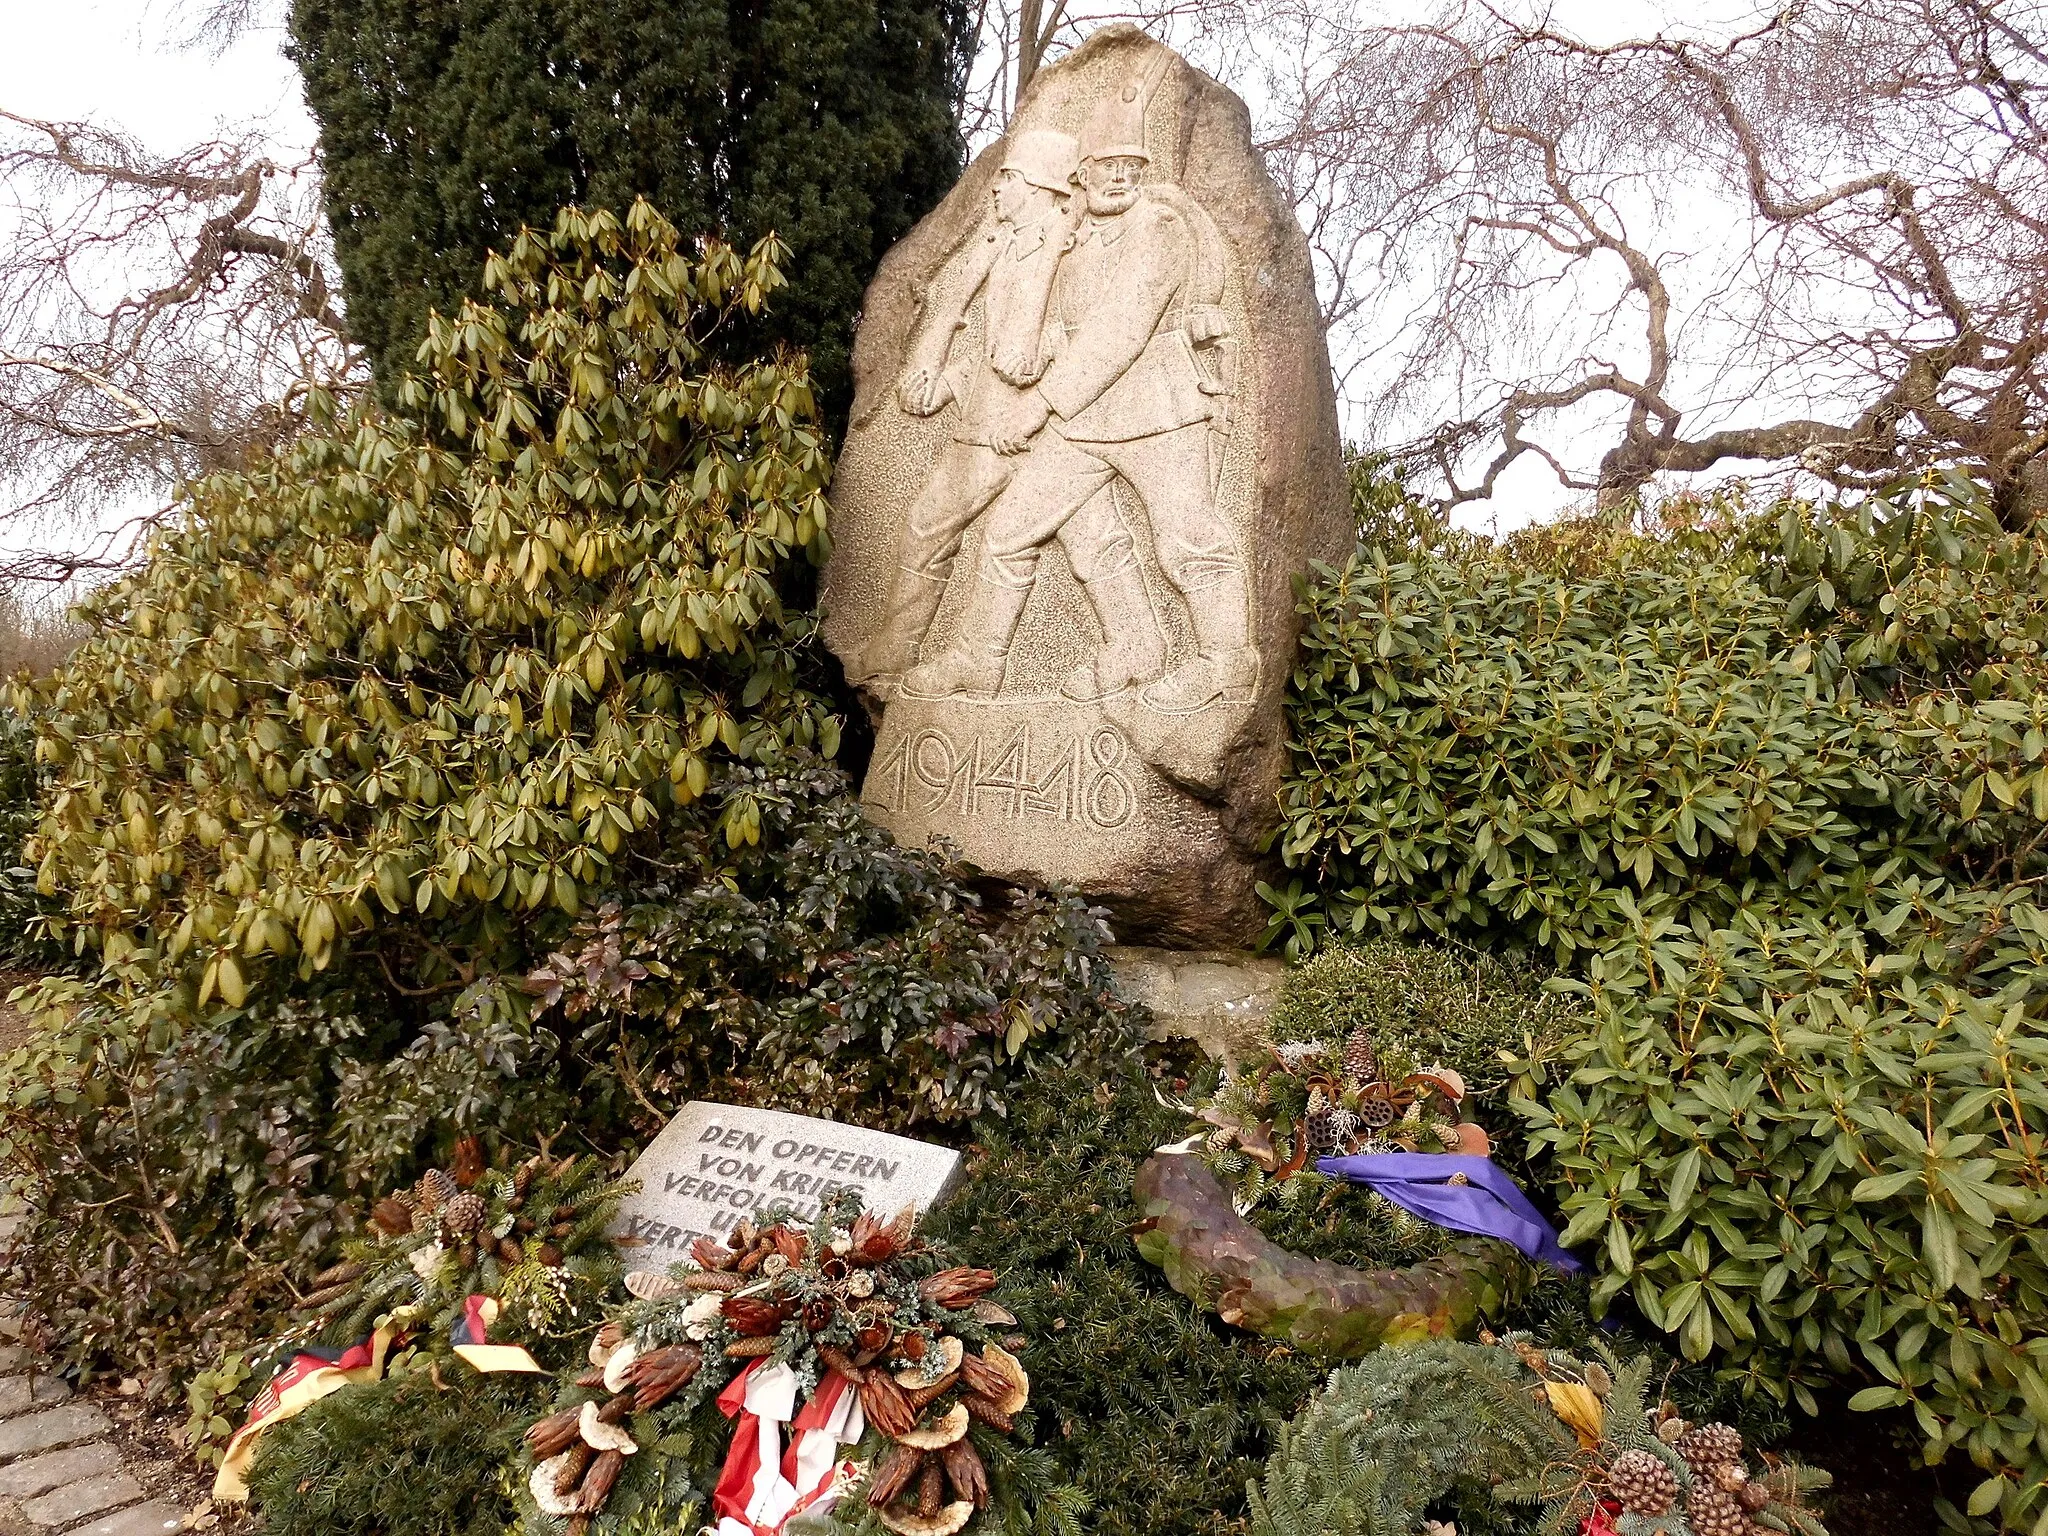 Photo showing: Das Kriegerdenkmal 1914/18 auf dem Ostfriedhof im Kieler Stadtteil Wellingdorf. Die Inschrift auf dem Gedenkstein lautet:
"DEN OPFERN VON KRIEG VERFOLGUNG UND VERTREIBUNG"